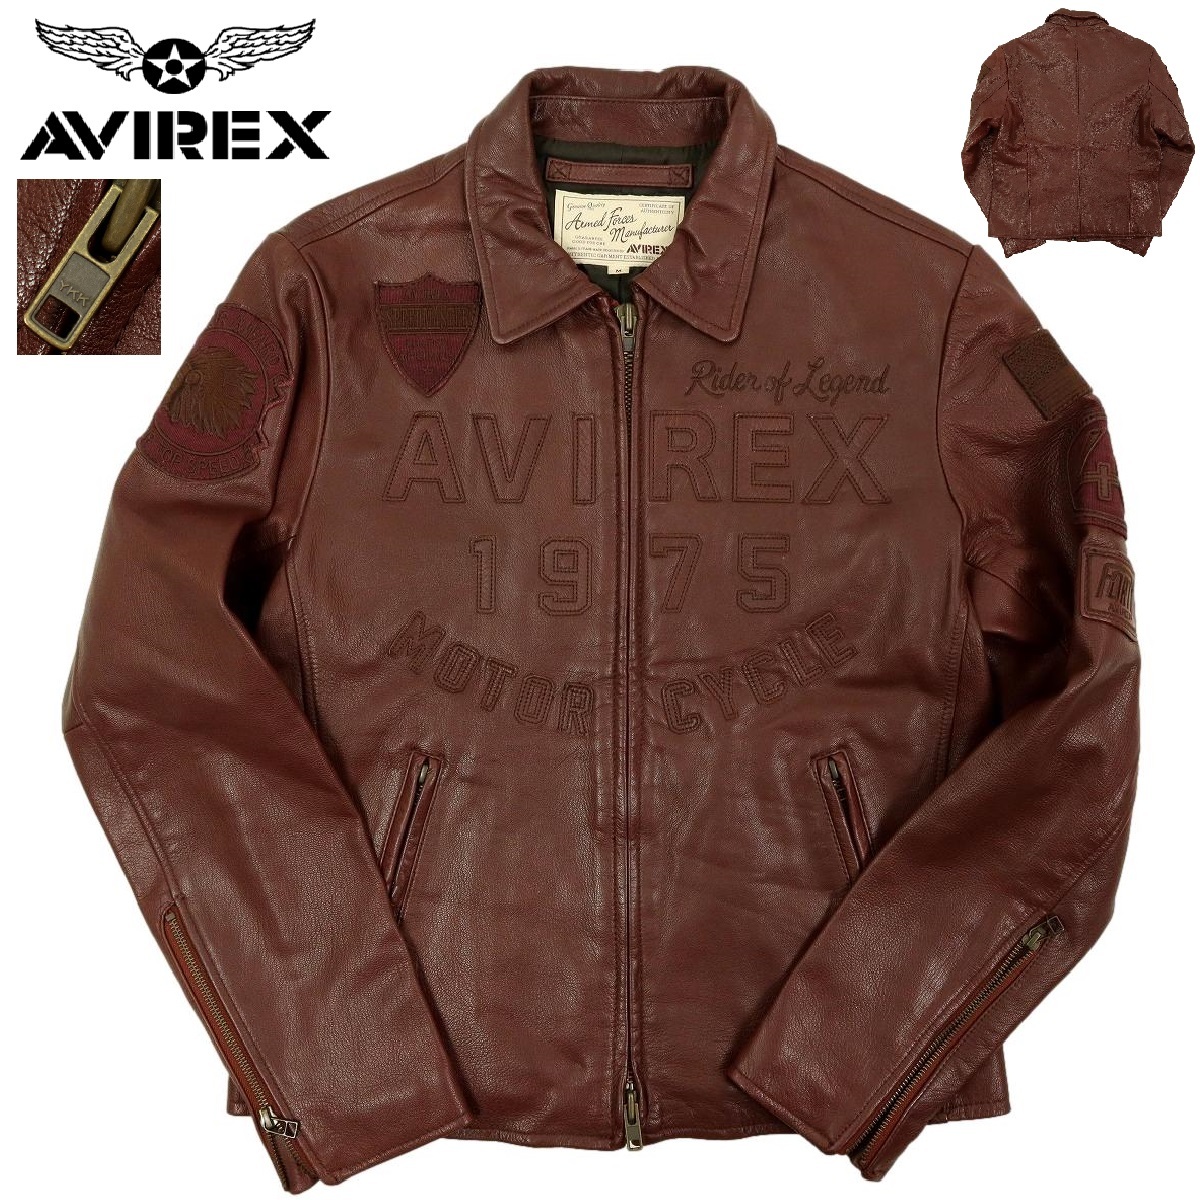 [B1380][ как новый ][ обычная цена 74,520 иен ]AVIREX Avirex кожаный жакет Tracker жакет 6151097 размер M